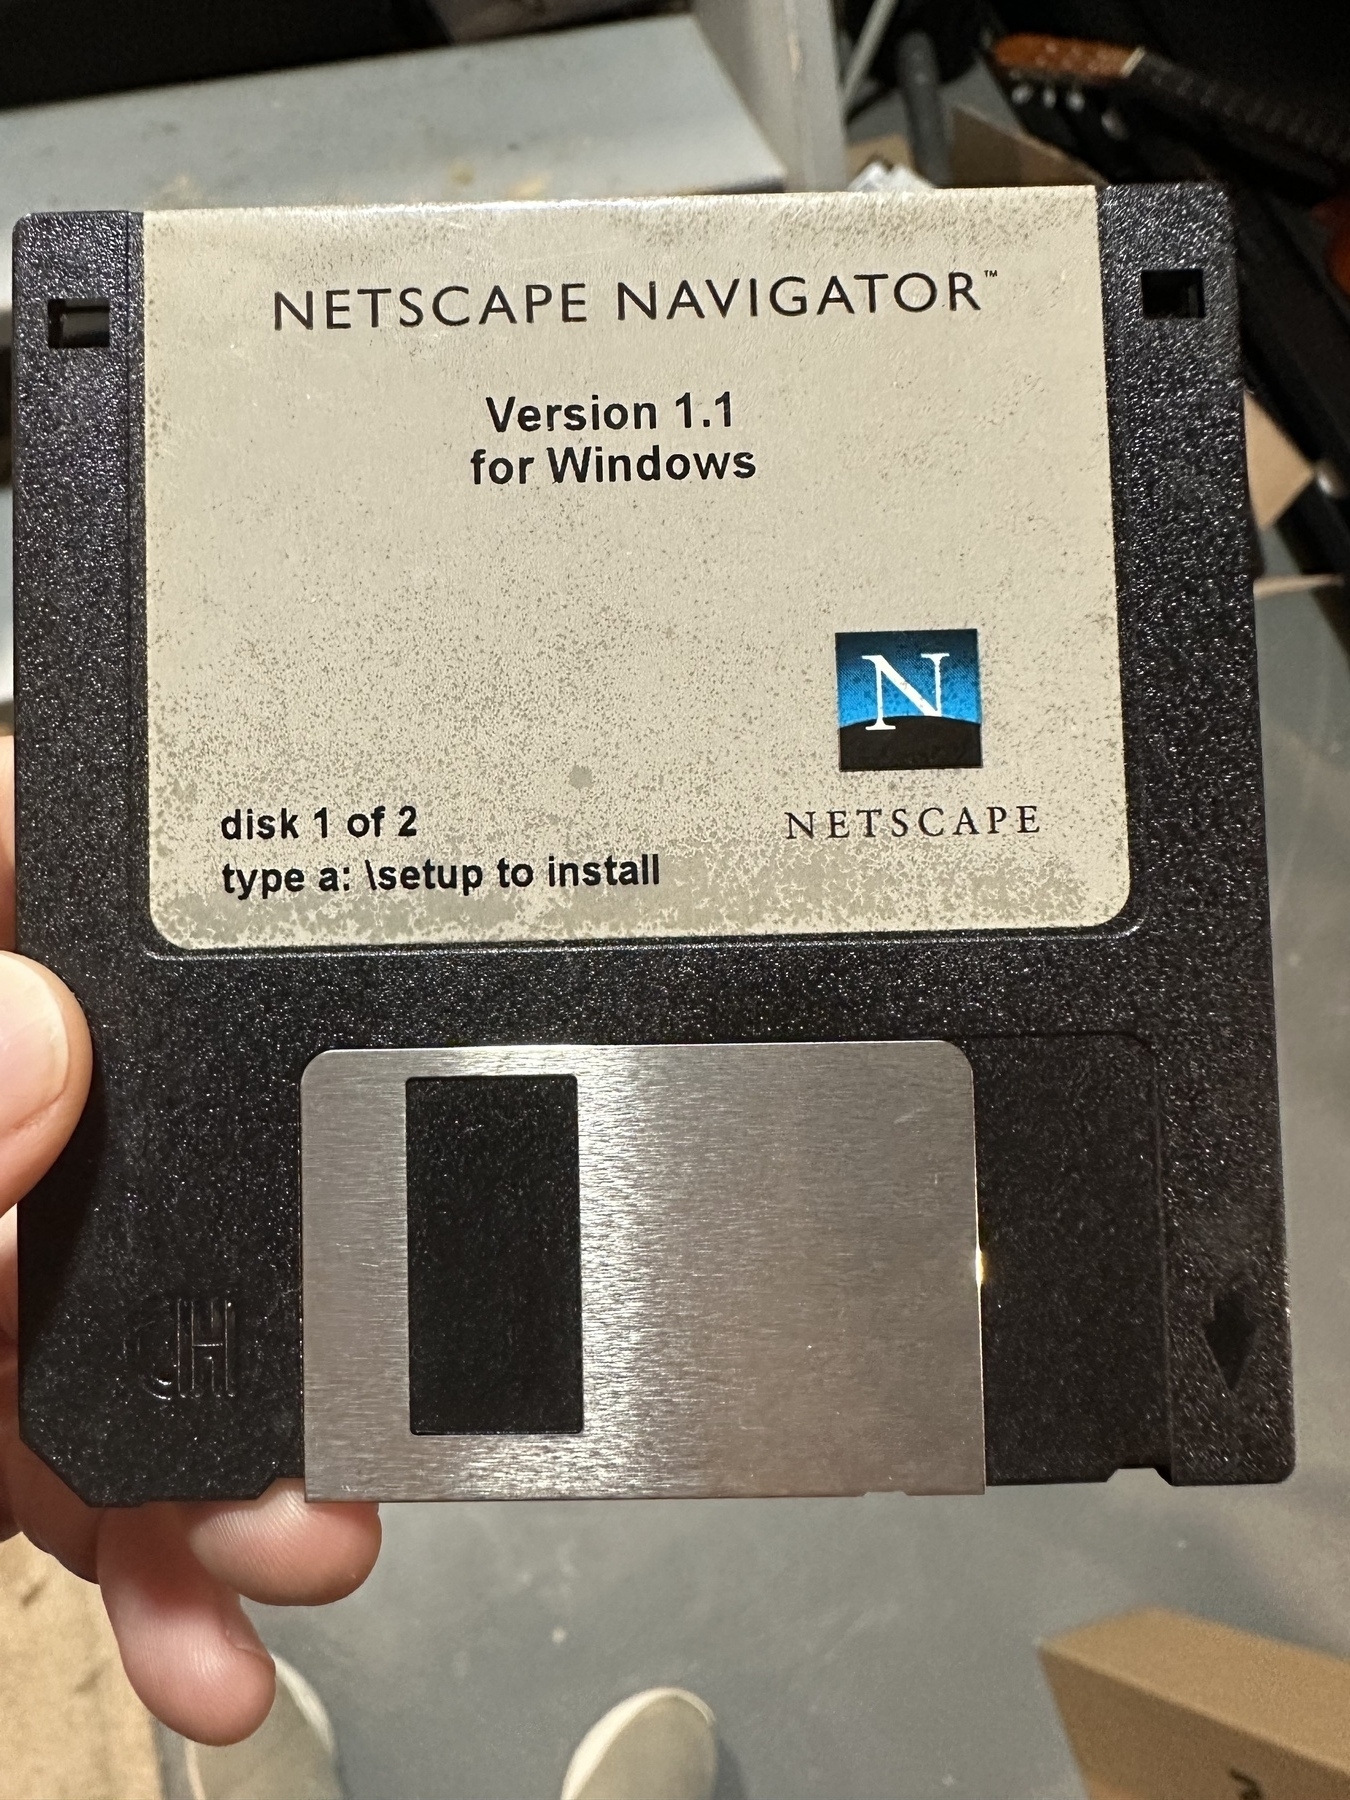 A floppy of Netscape Navigator version 1.1